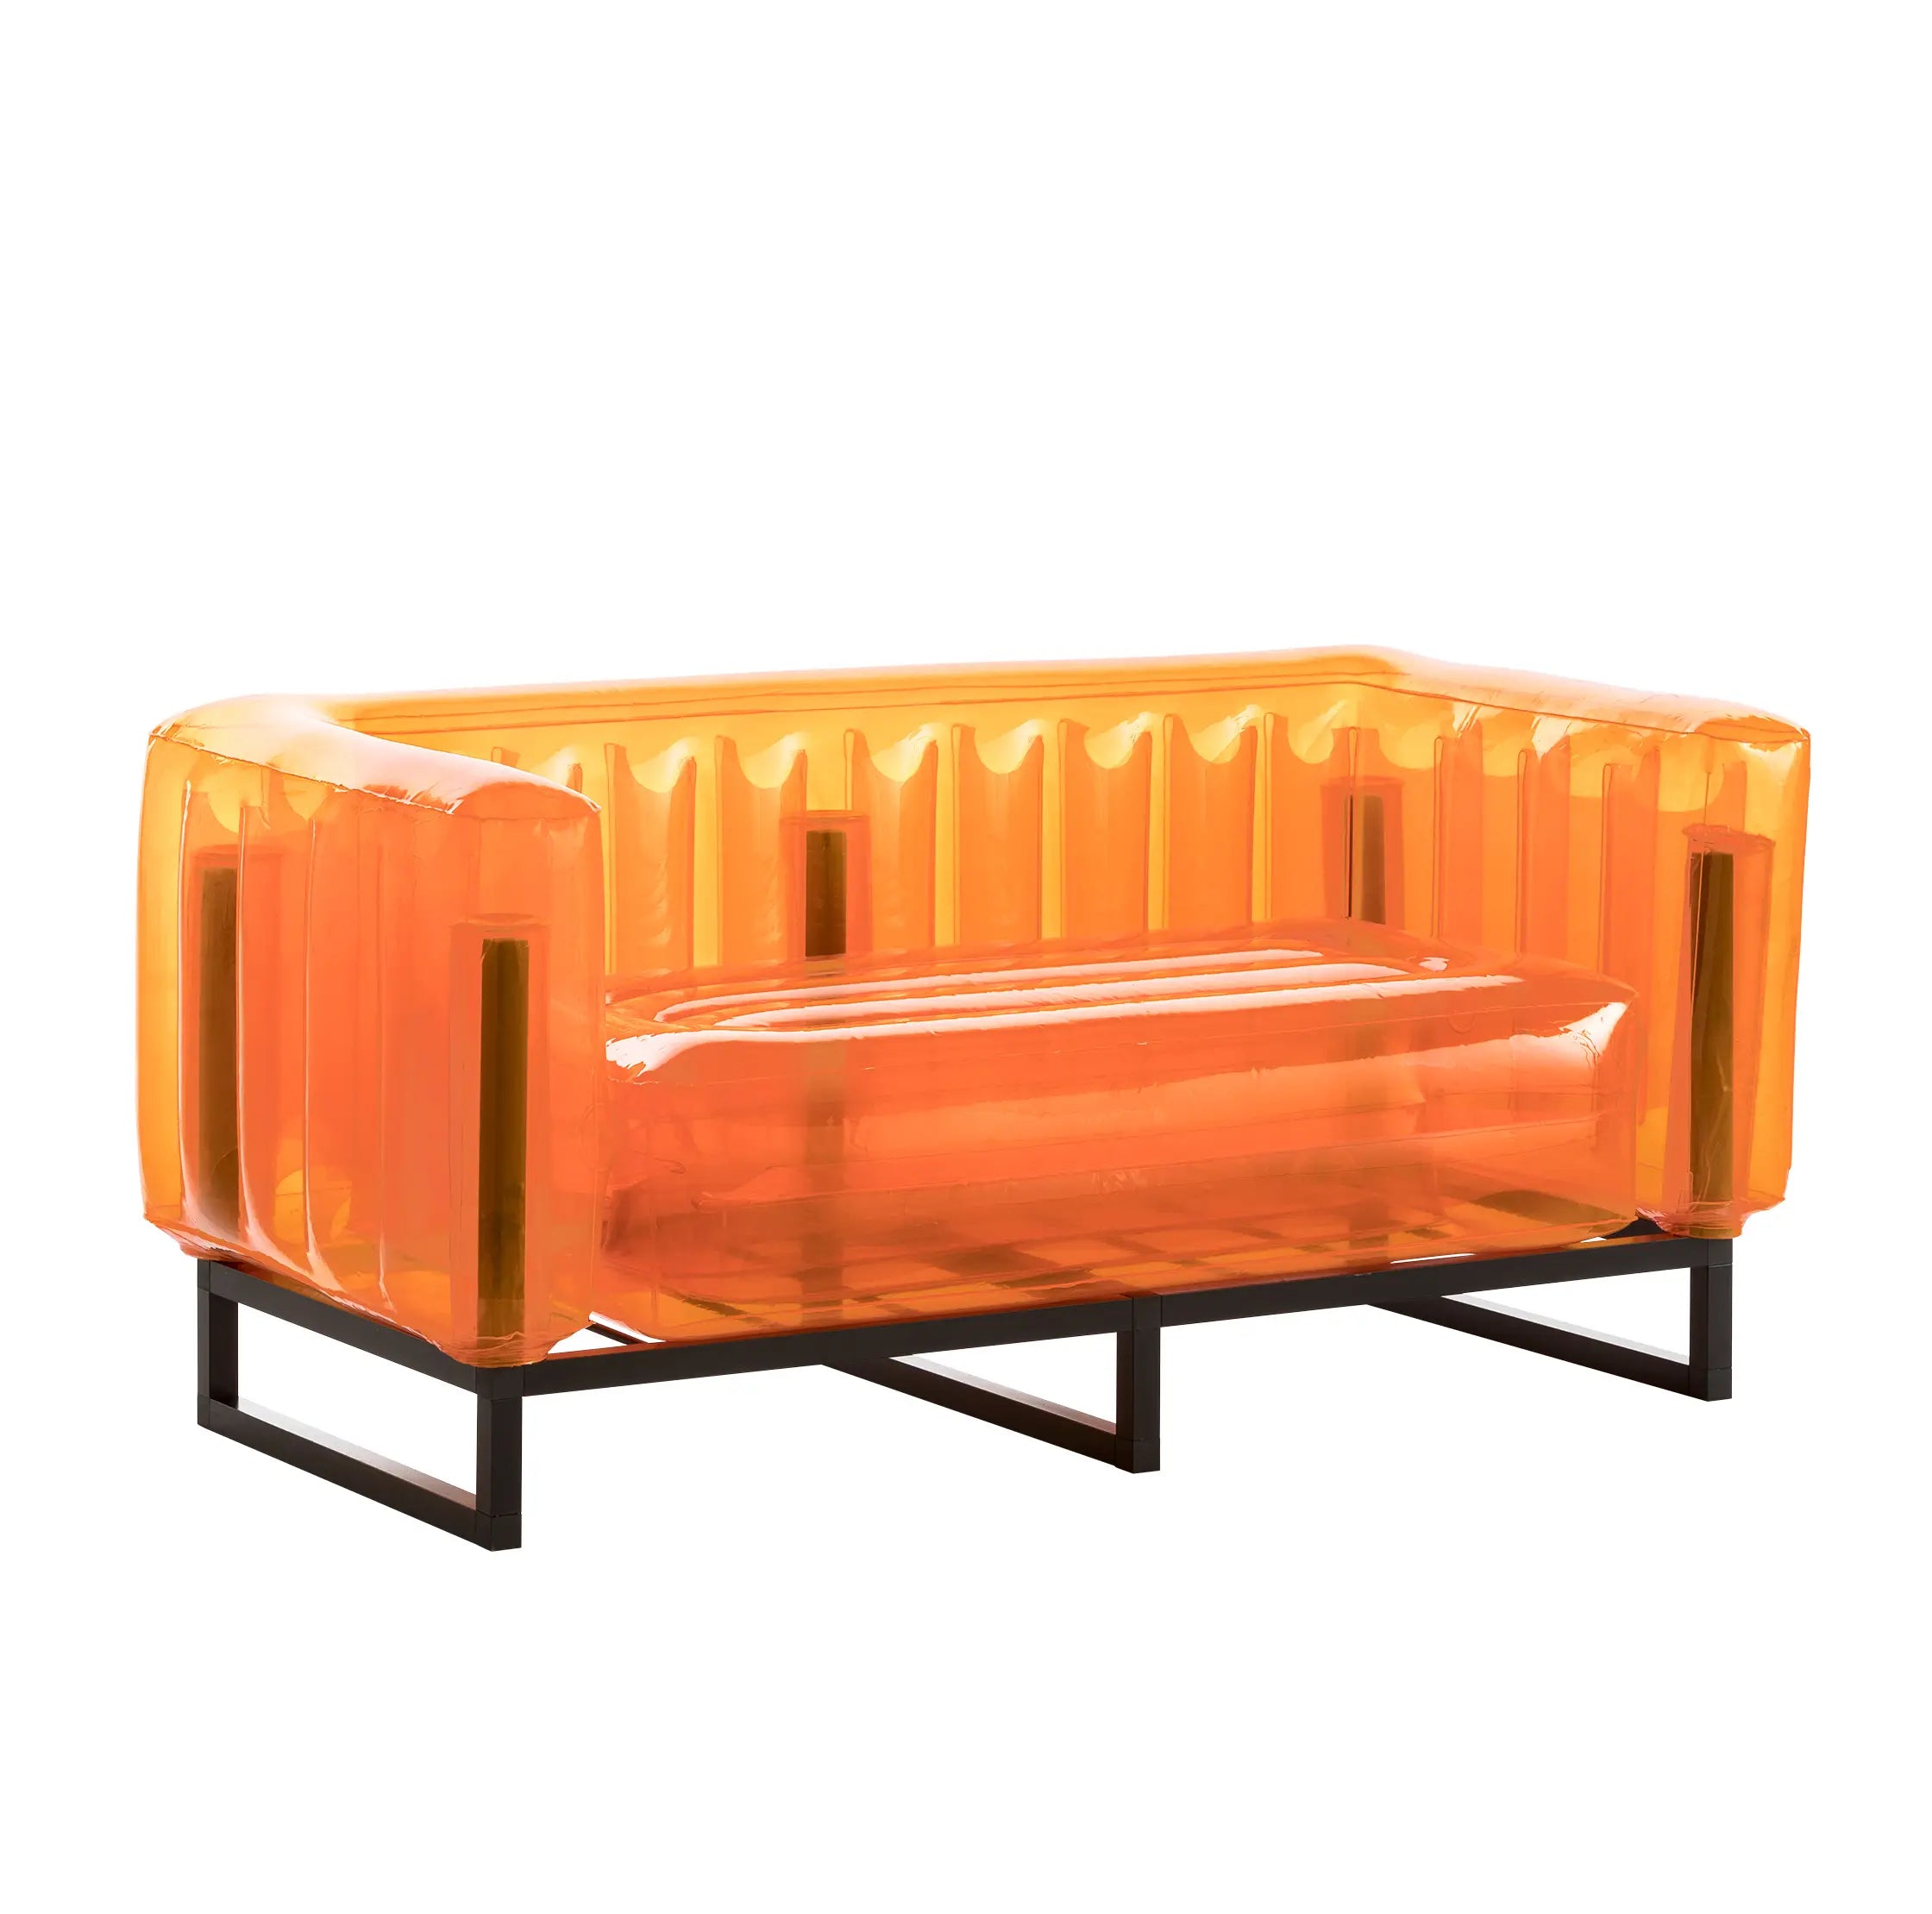 EKO Sofa in Aluminum and TPU Crystal Orange